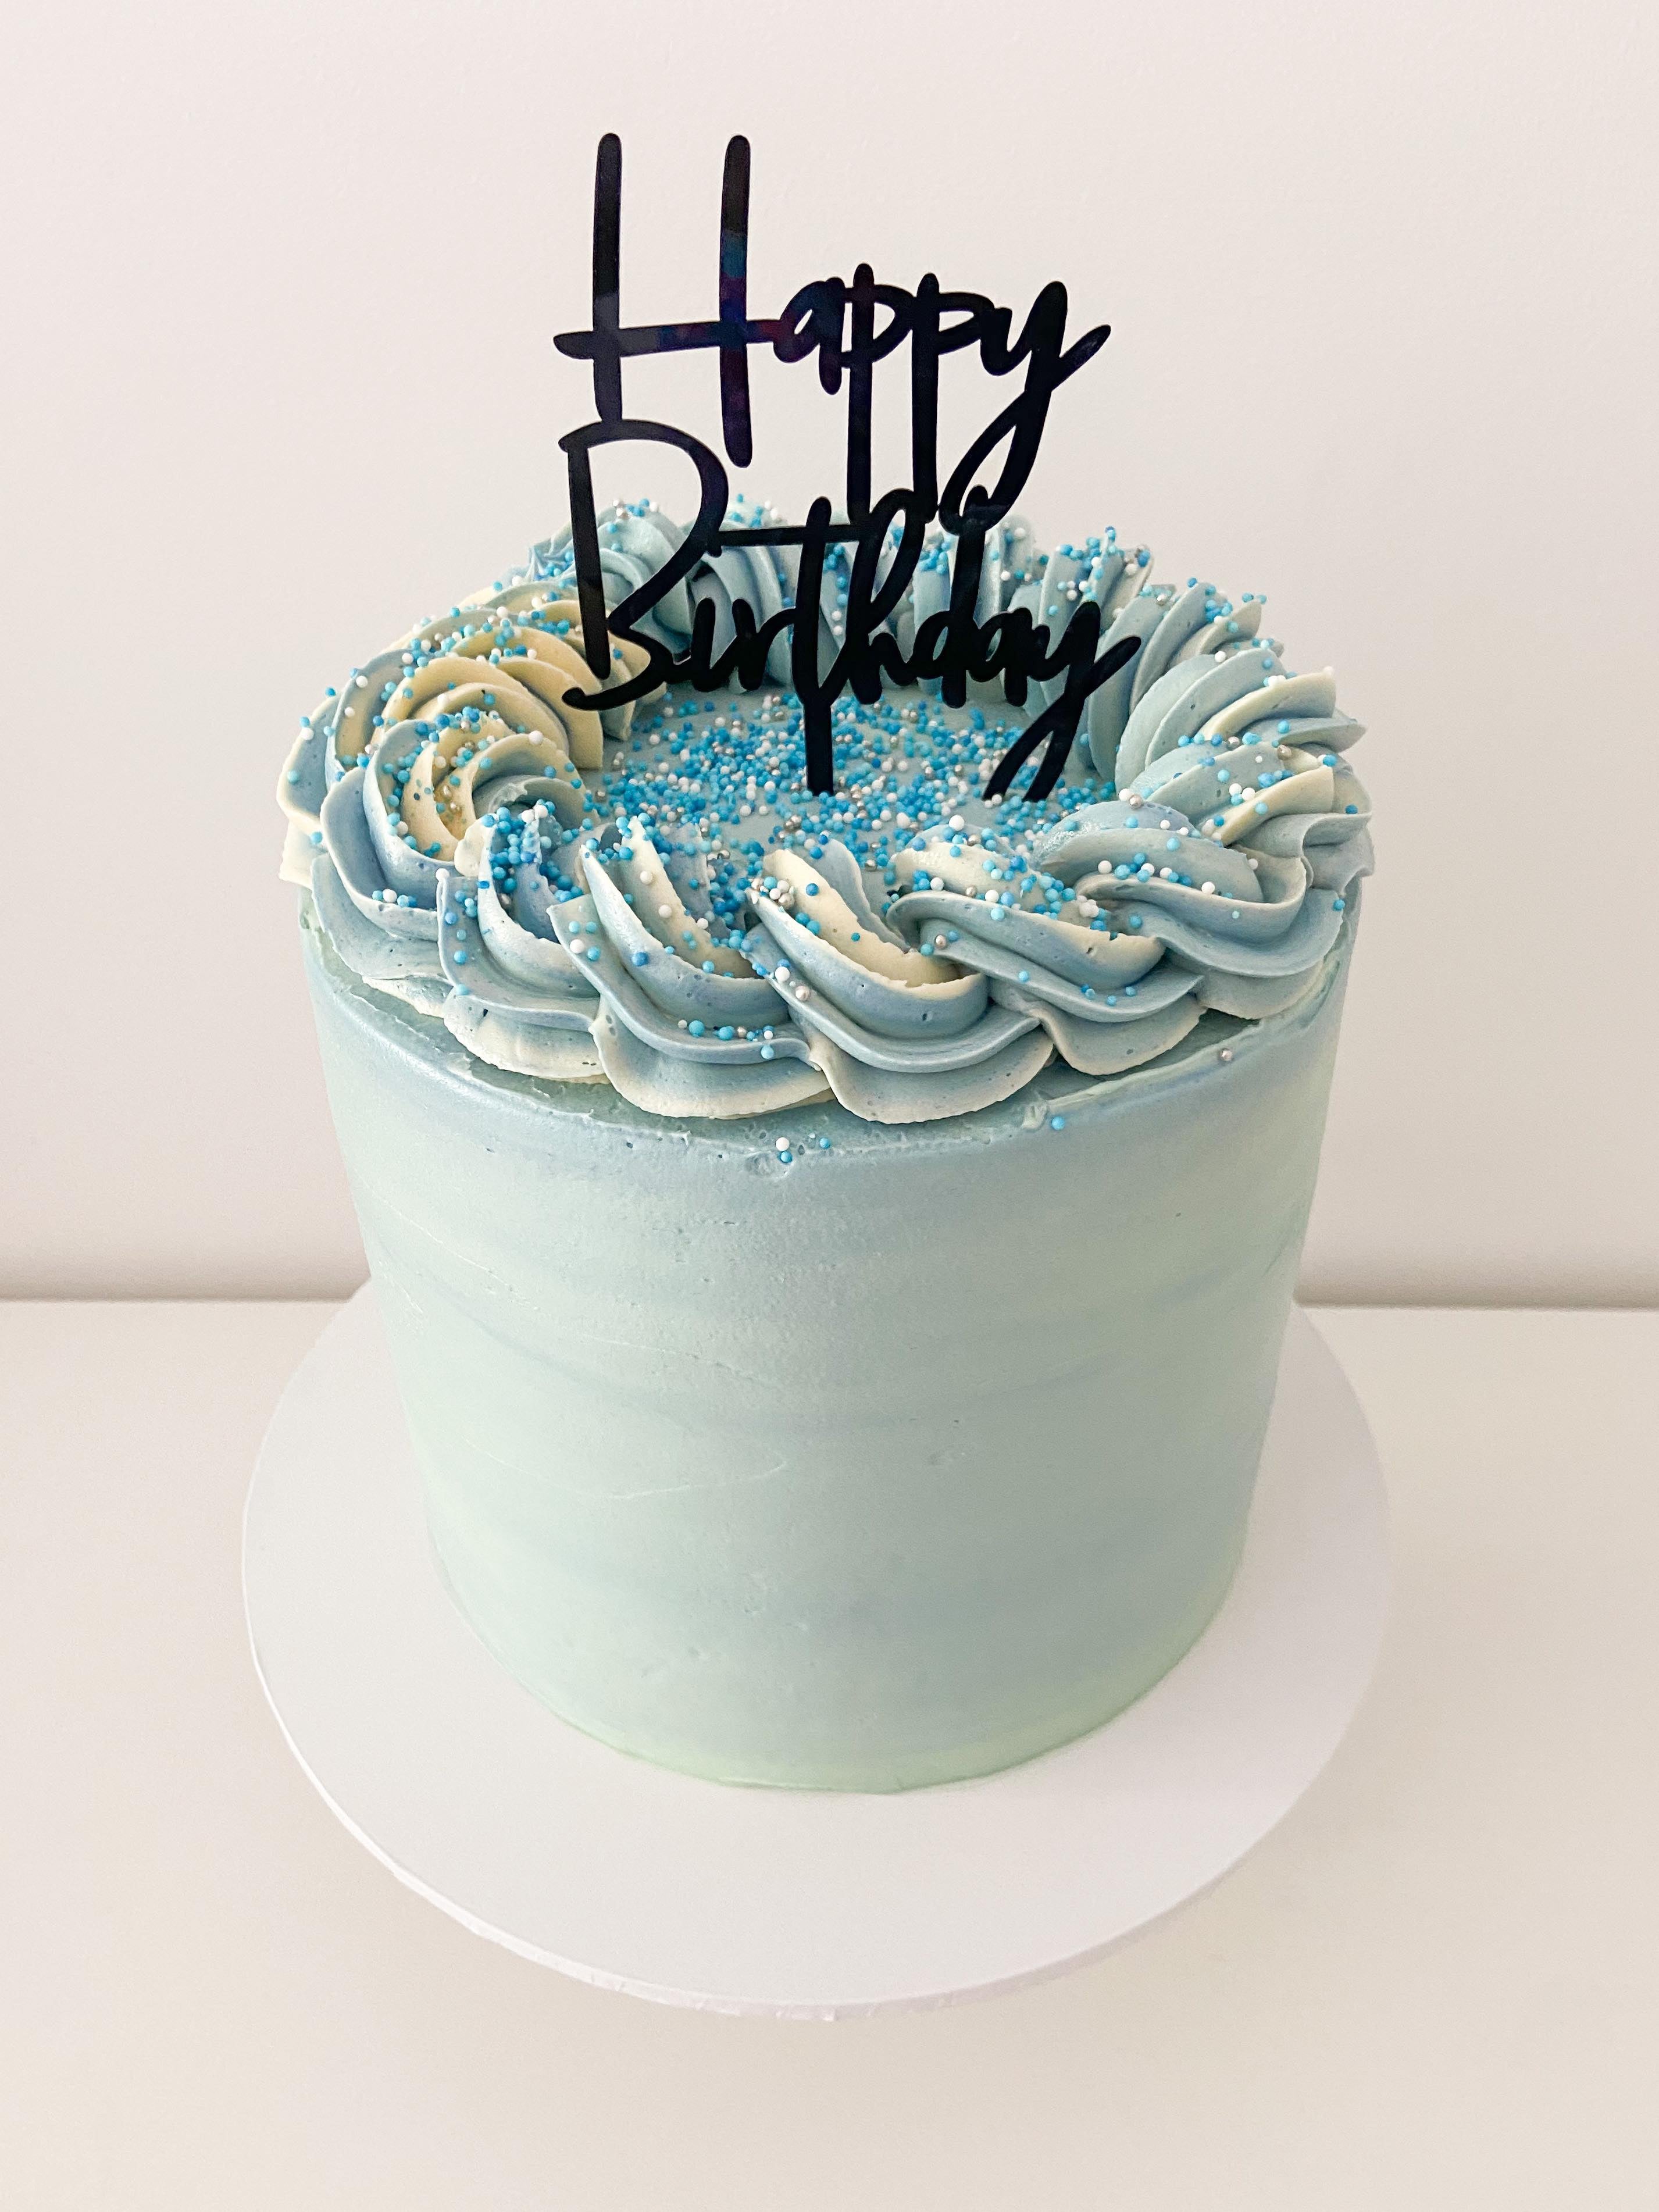 Bluey Cake - Sweets & Treats Blog